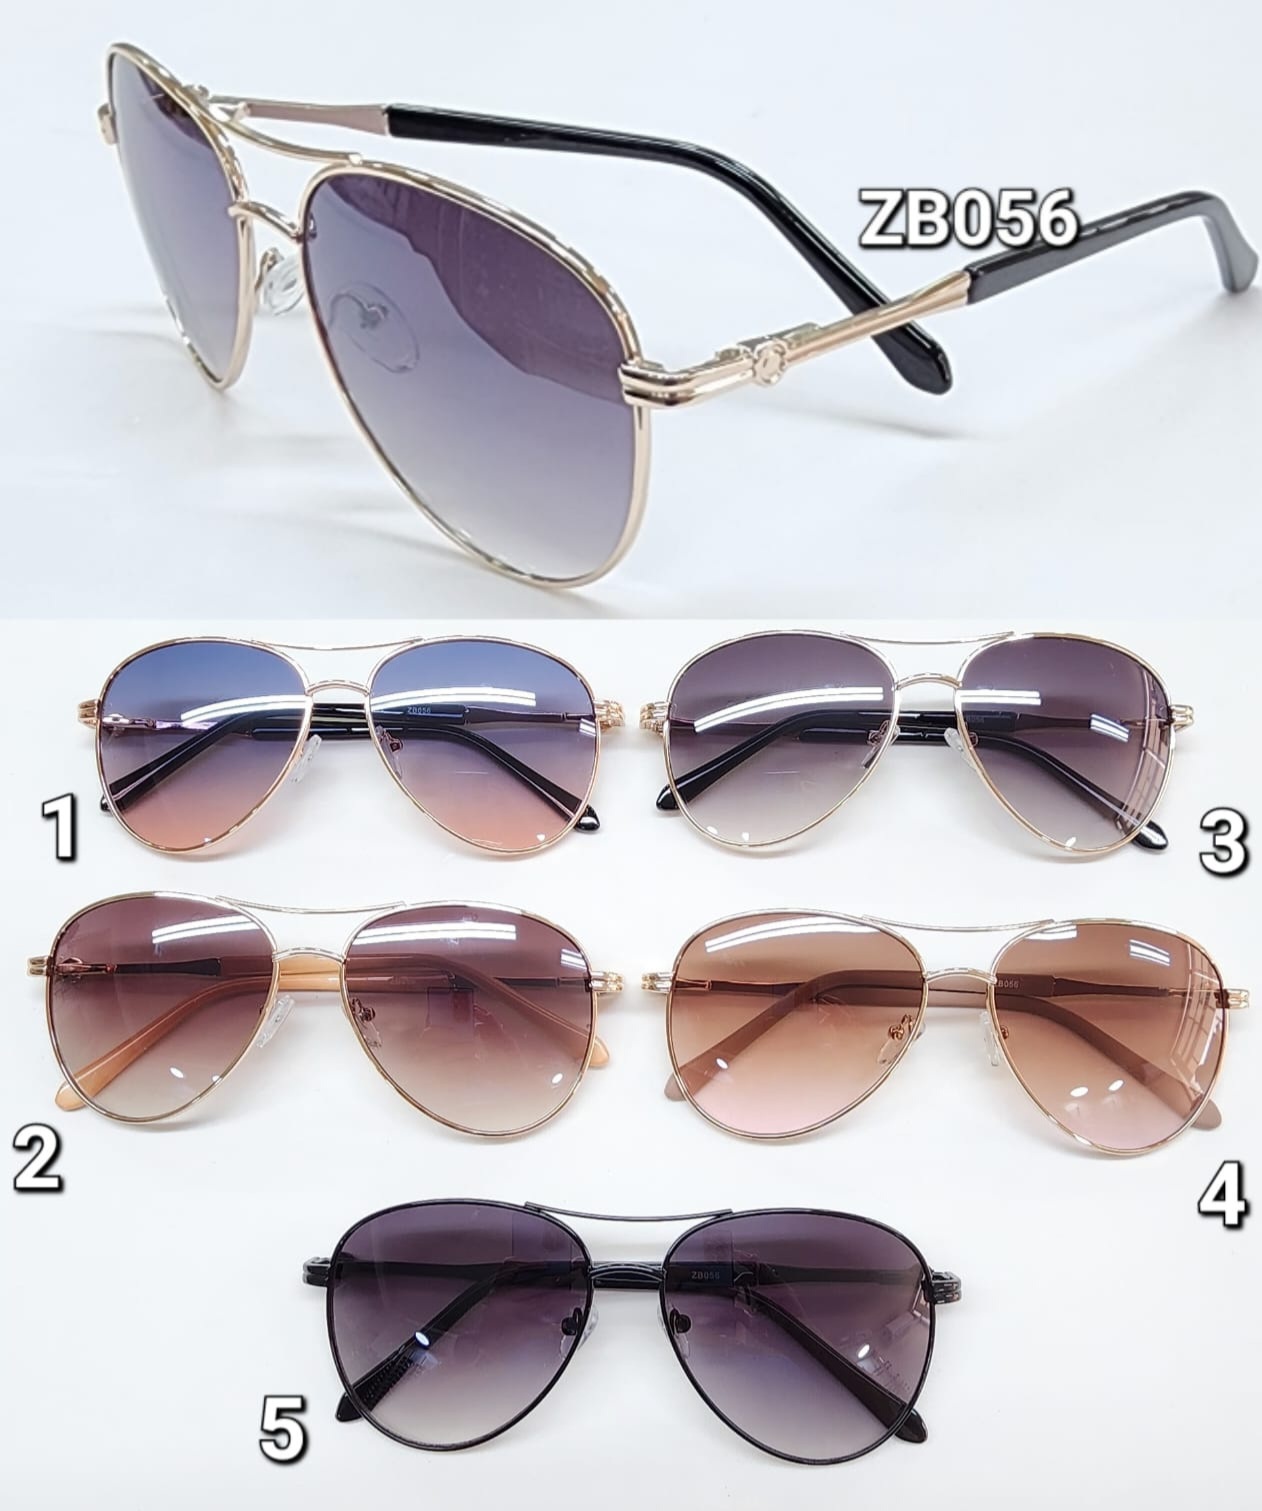 N2 - Óculos de SOL - FEM.   R$38,00  /  CRISTAL R$45,00 thumbnail